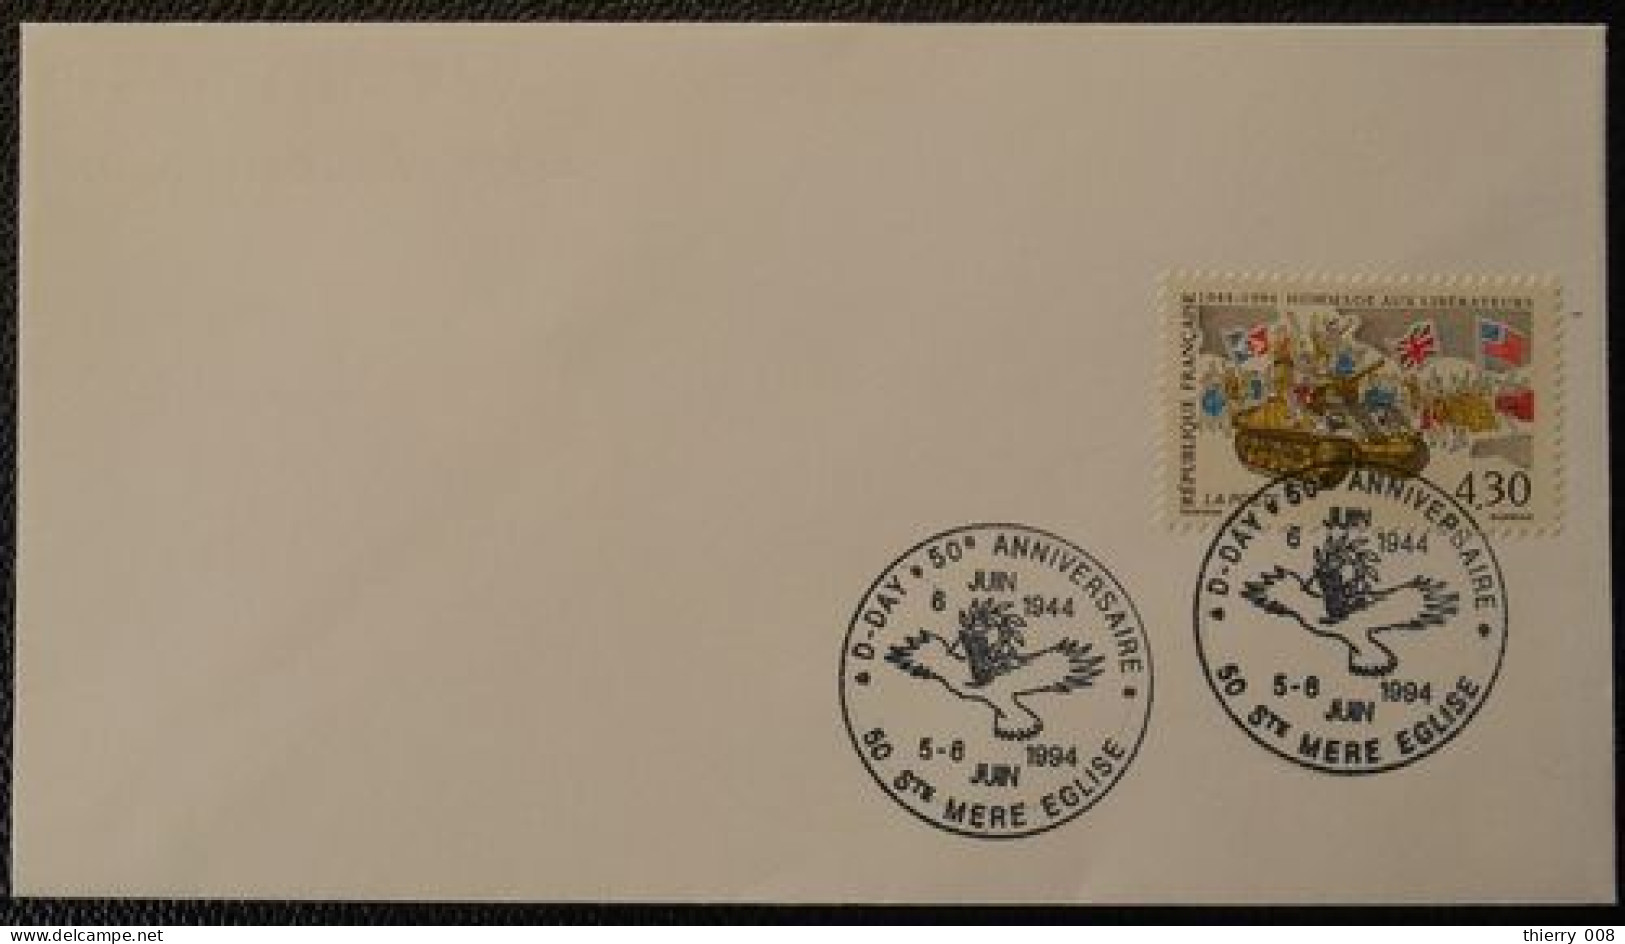 S037 Cachet Temporaire Sainte Mère Eglise 50 Manche D-Day 50 Anniversaire 5 6 Juin 1994 - Commemorative Postmarks